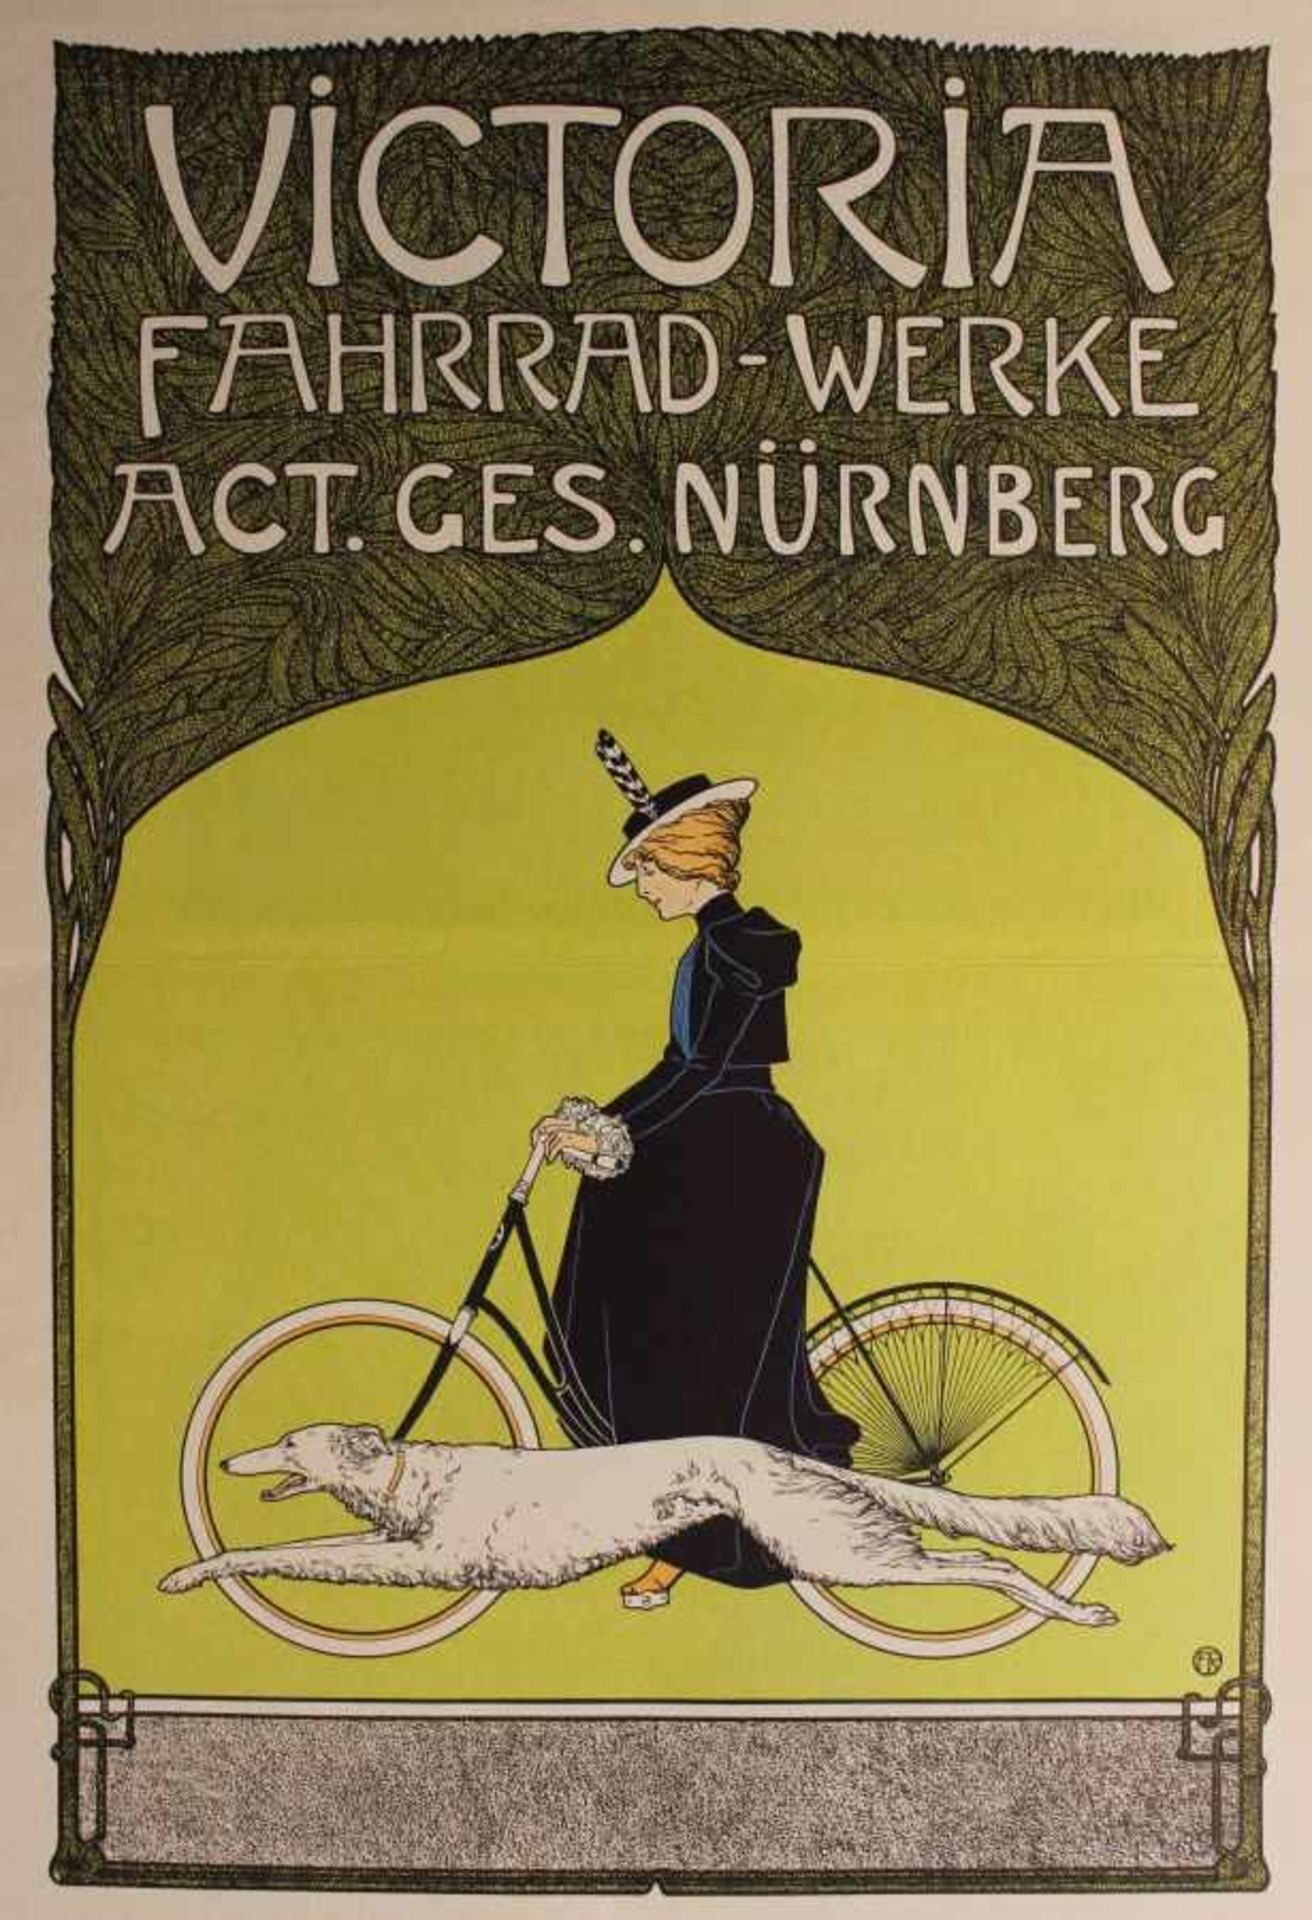 Farbgrafik - Fritz Rehm (1871 München -1928 Lichtenfels) "Victoria Fahrrad-Werke Act.Ges. Nürnberg",